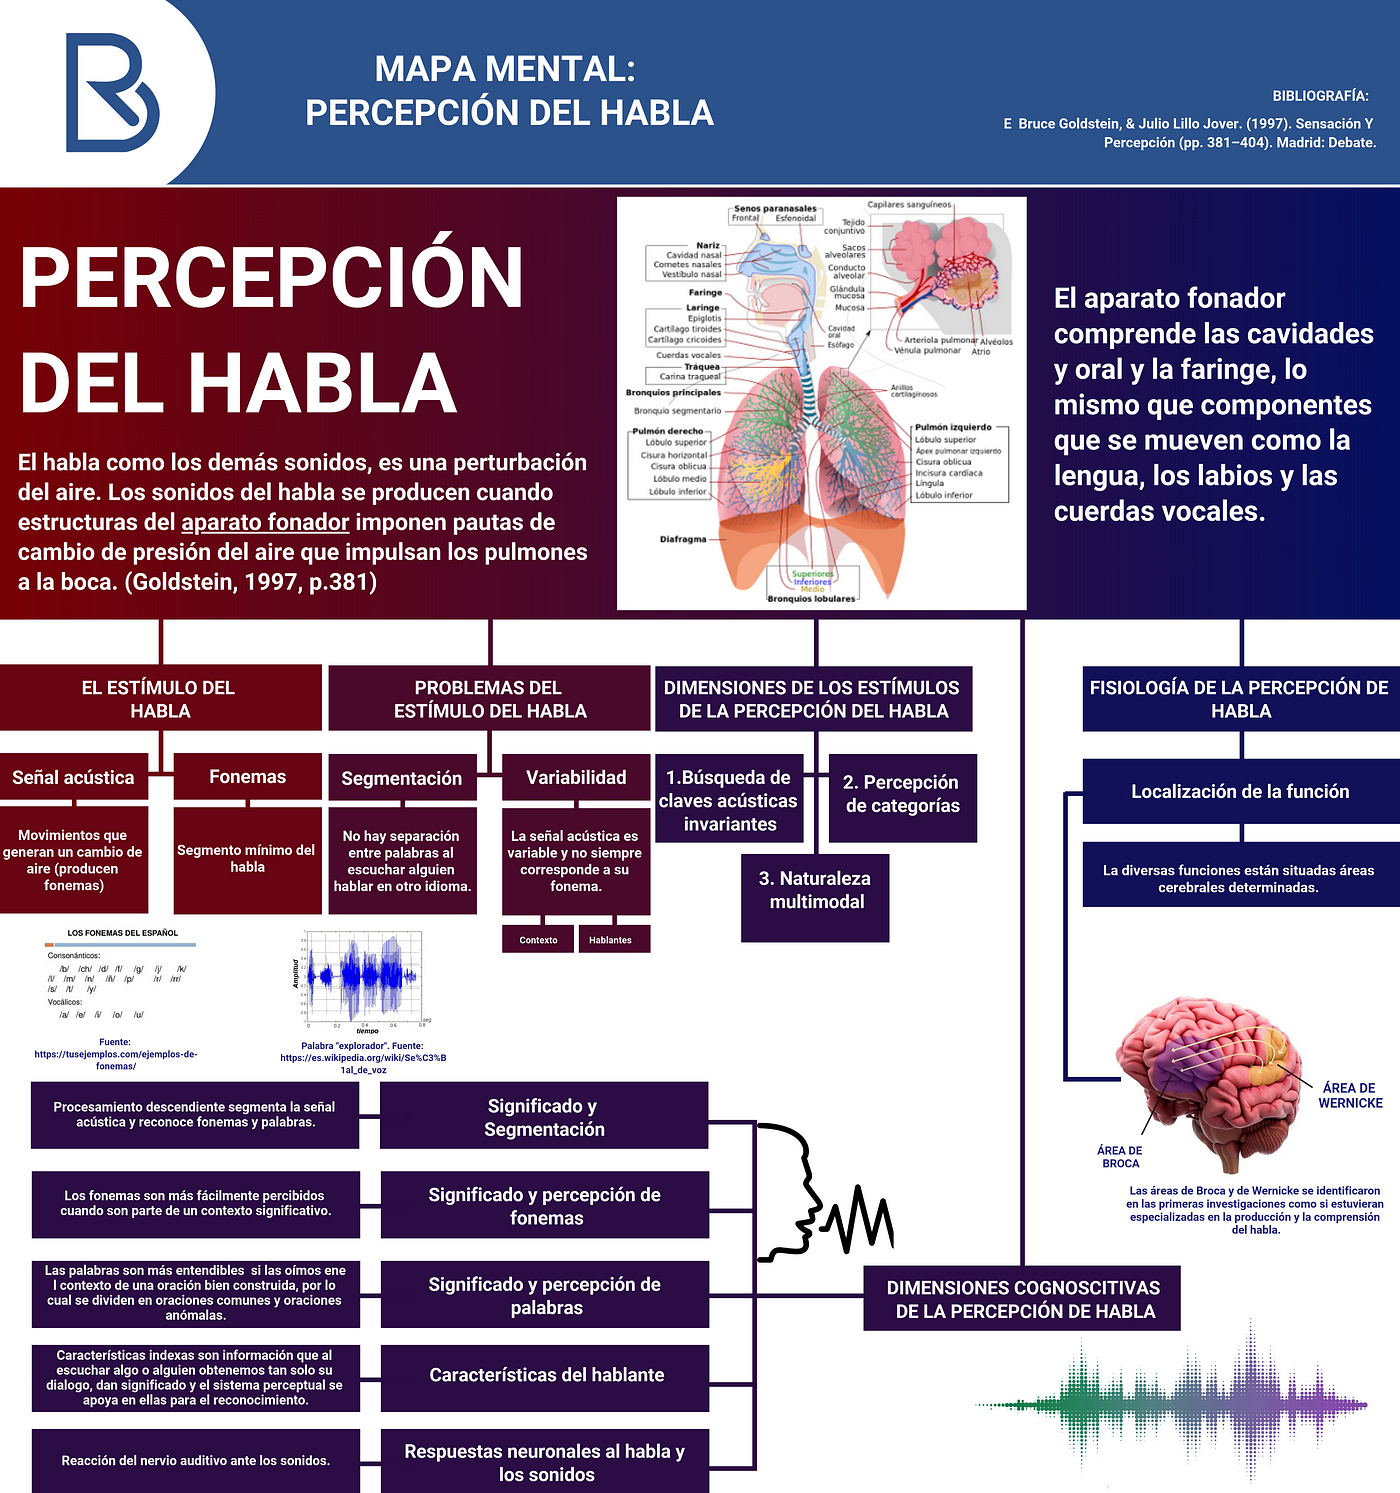 Mapa Mental: Percepción del habla - HABLEMOS DE PSICOLOGÍA - Medium